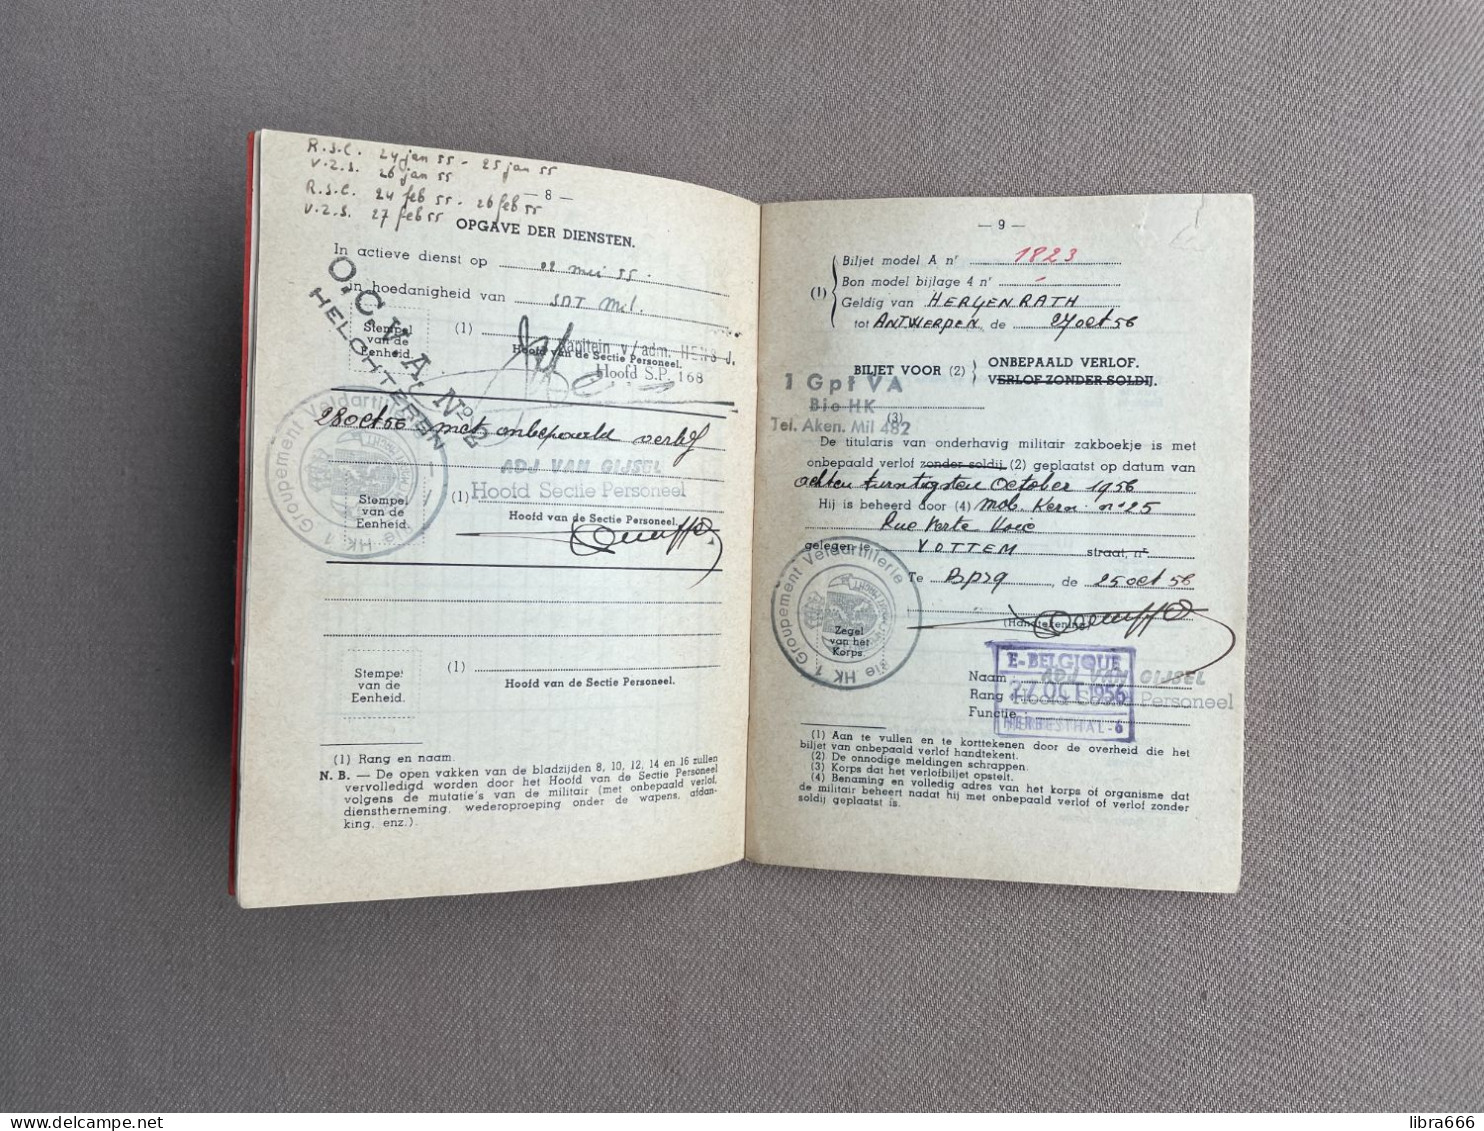 Belgisch Leger - MILITAIR ZAKBOEKJE 1956 - GANSES Olaf Jan Baptist - Antwerpen - BPS 9 BSD 1 GPT VA BIE HK Aken - Documenti